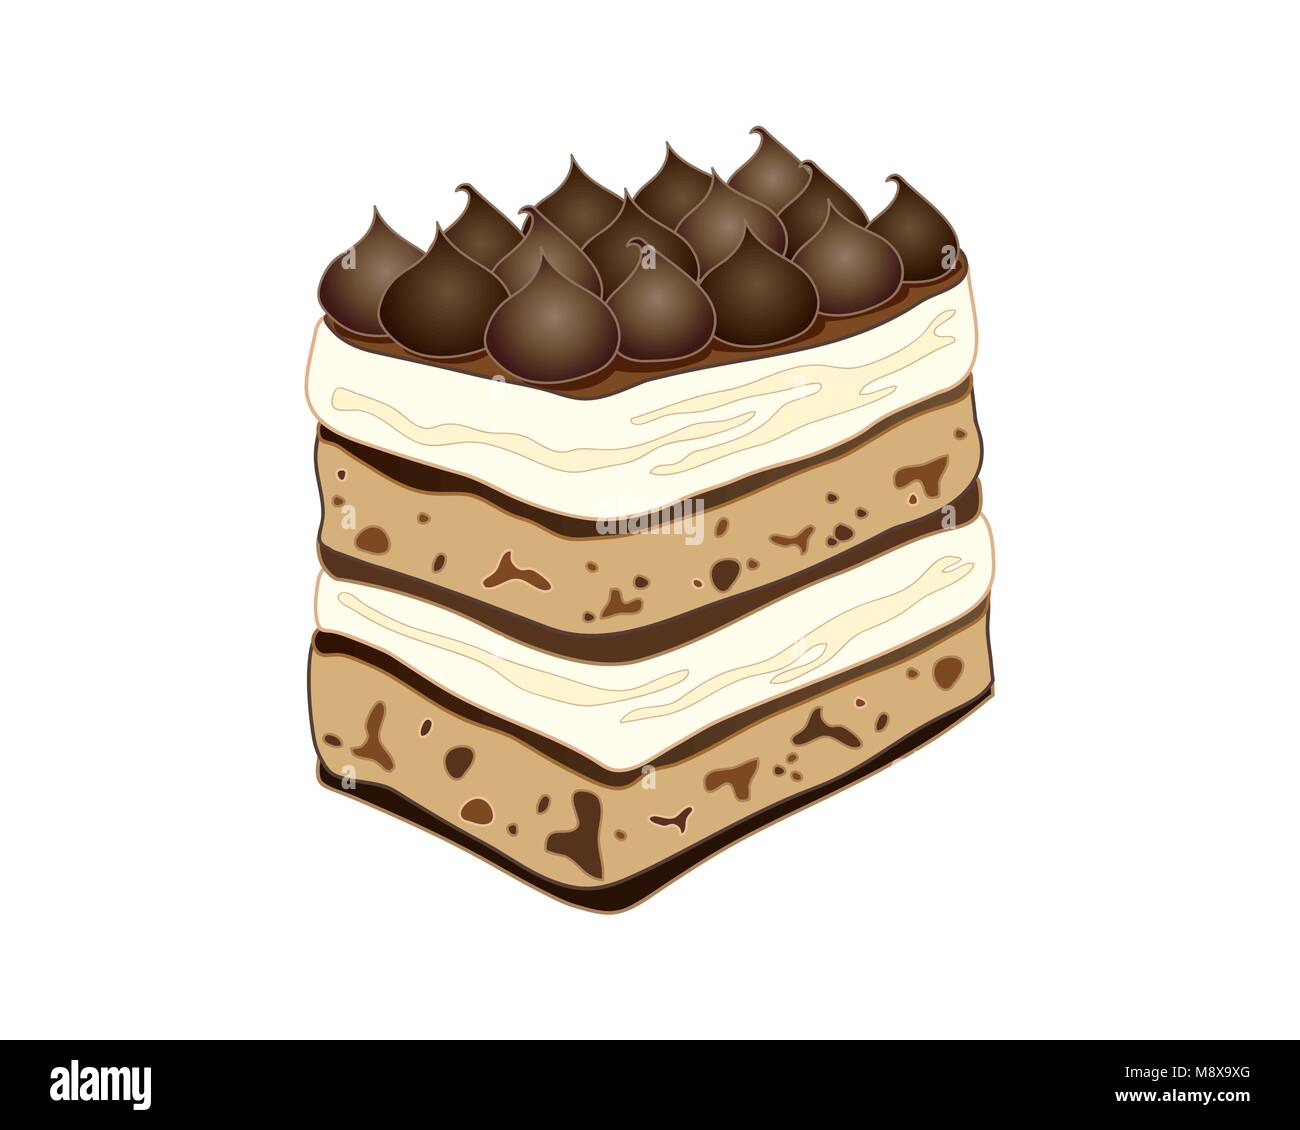 Un vecteur illustration en eps 10 format d'un gâteau tiramisu classique Café avec décoration d'ambiance sur fond blanc Illustration de Vecteur